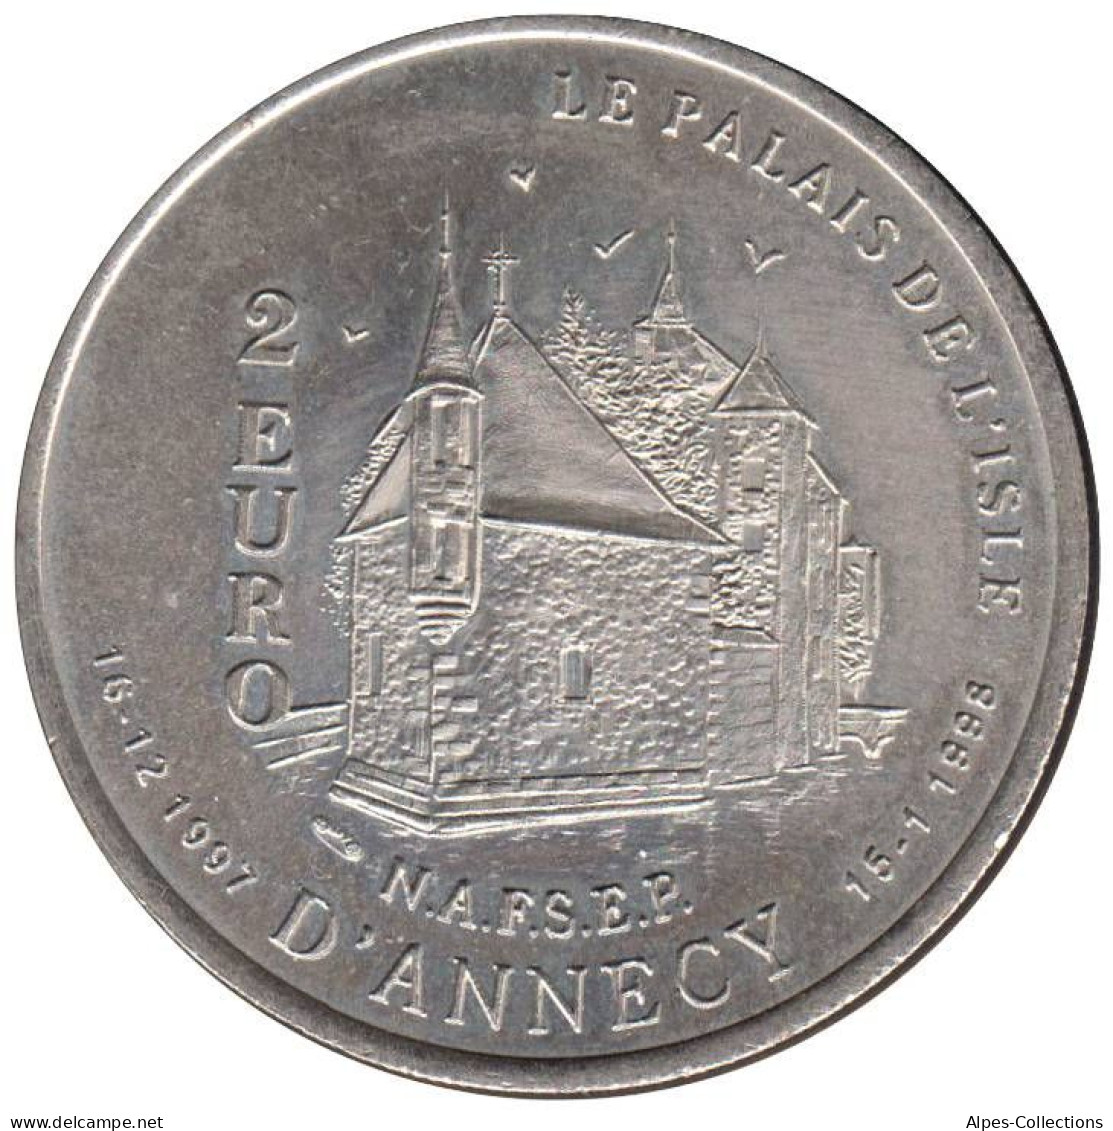 ANNECY - EU0020.1 - 2 EURO DES VILLES - Réf: T234 - 1997 - Euro Der Städte